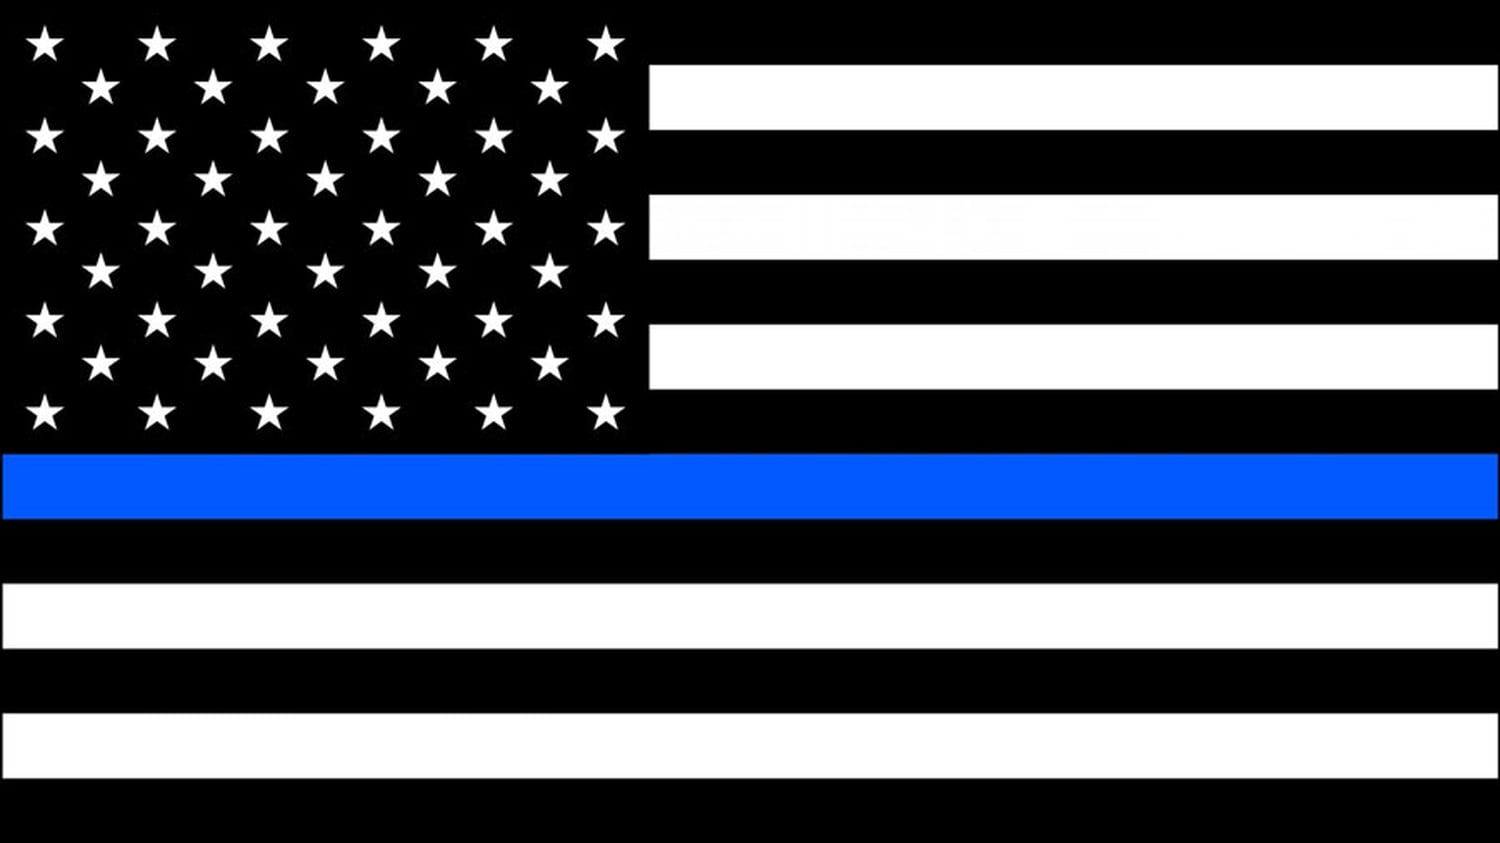 Sheriff-Blue-lives23-flag.jpg